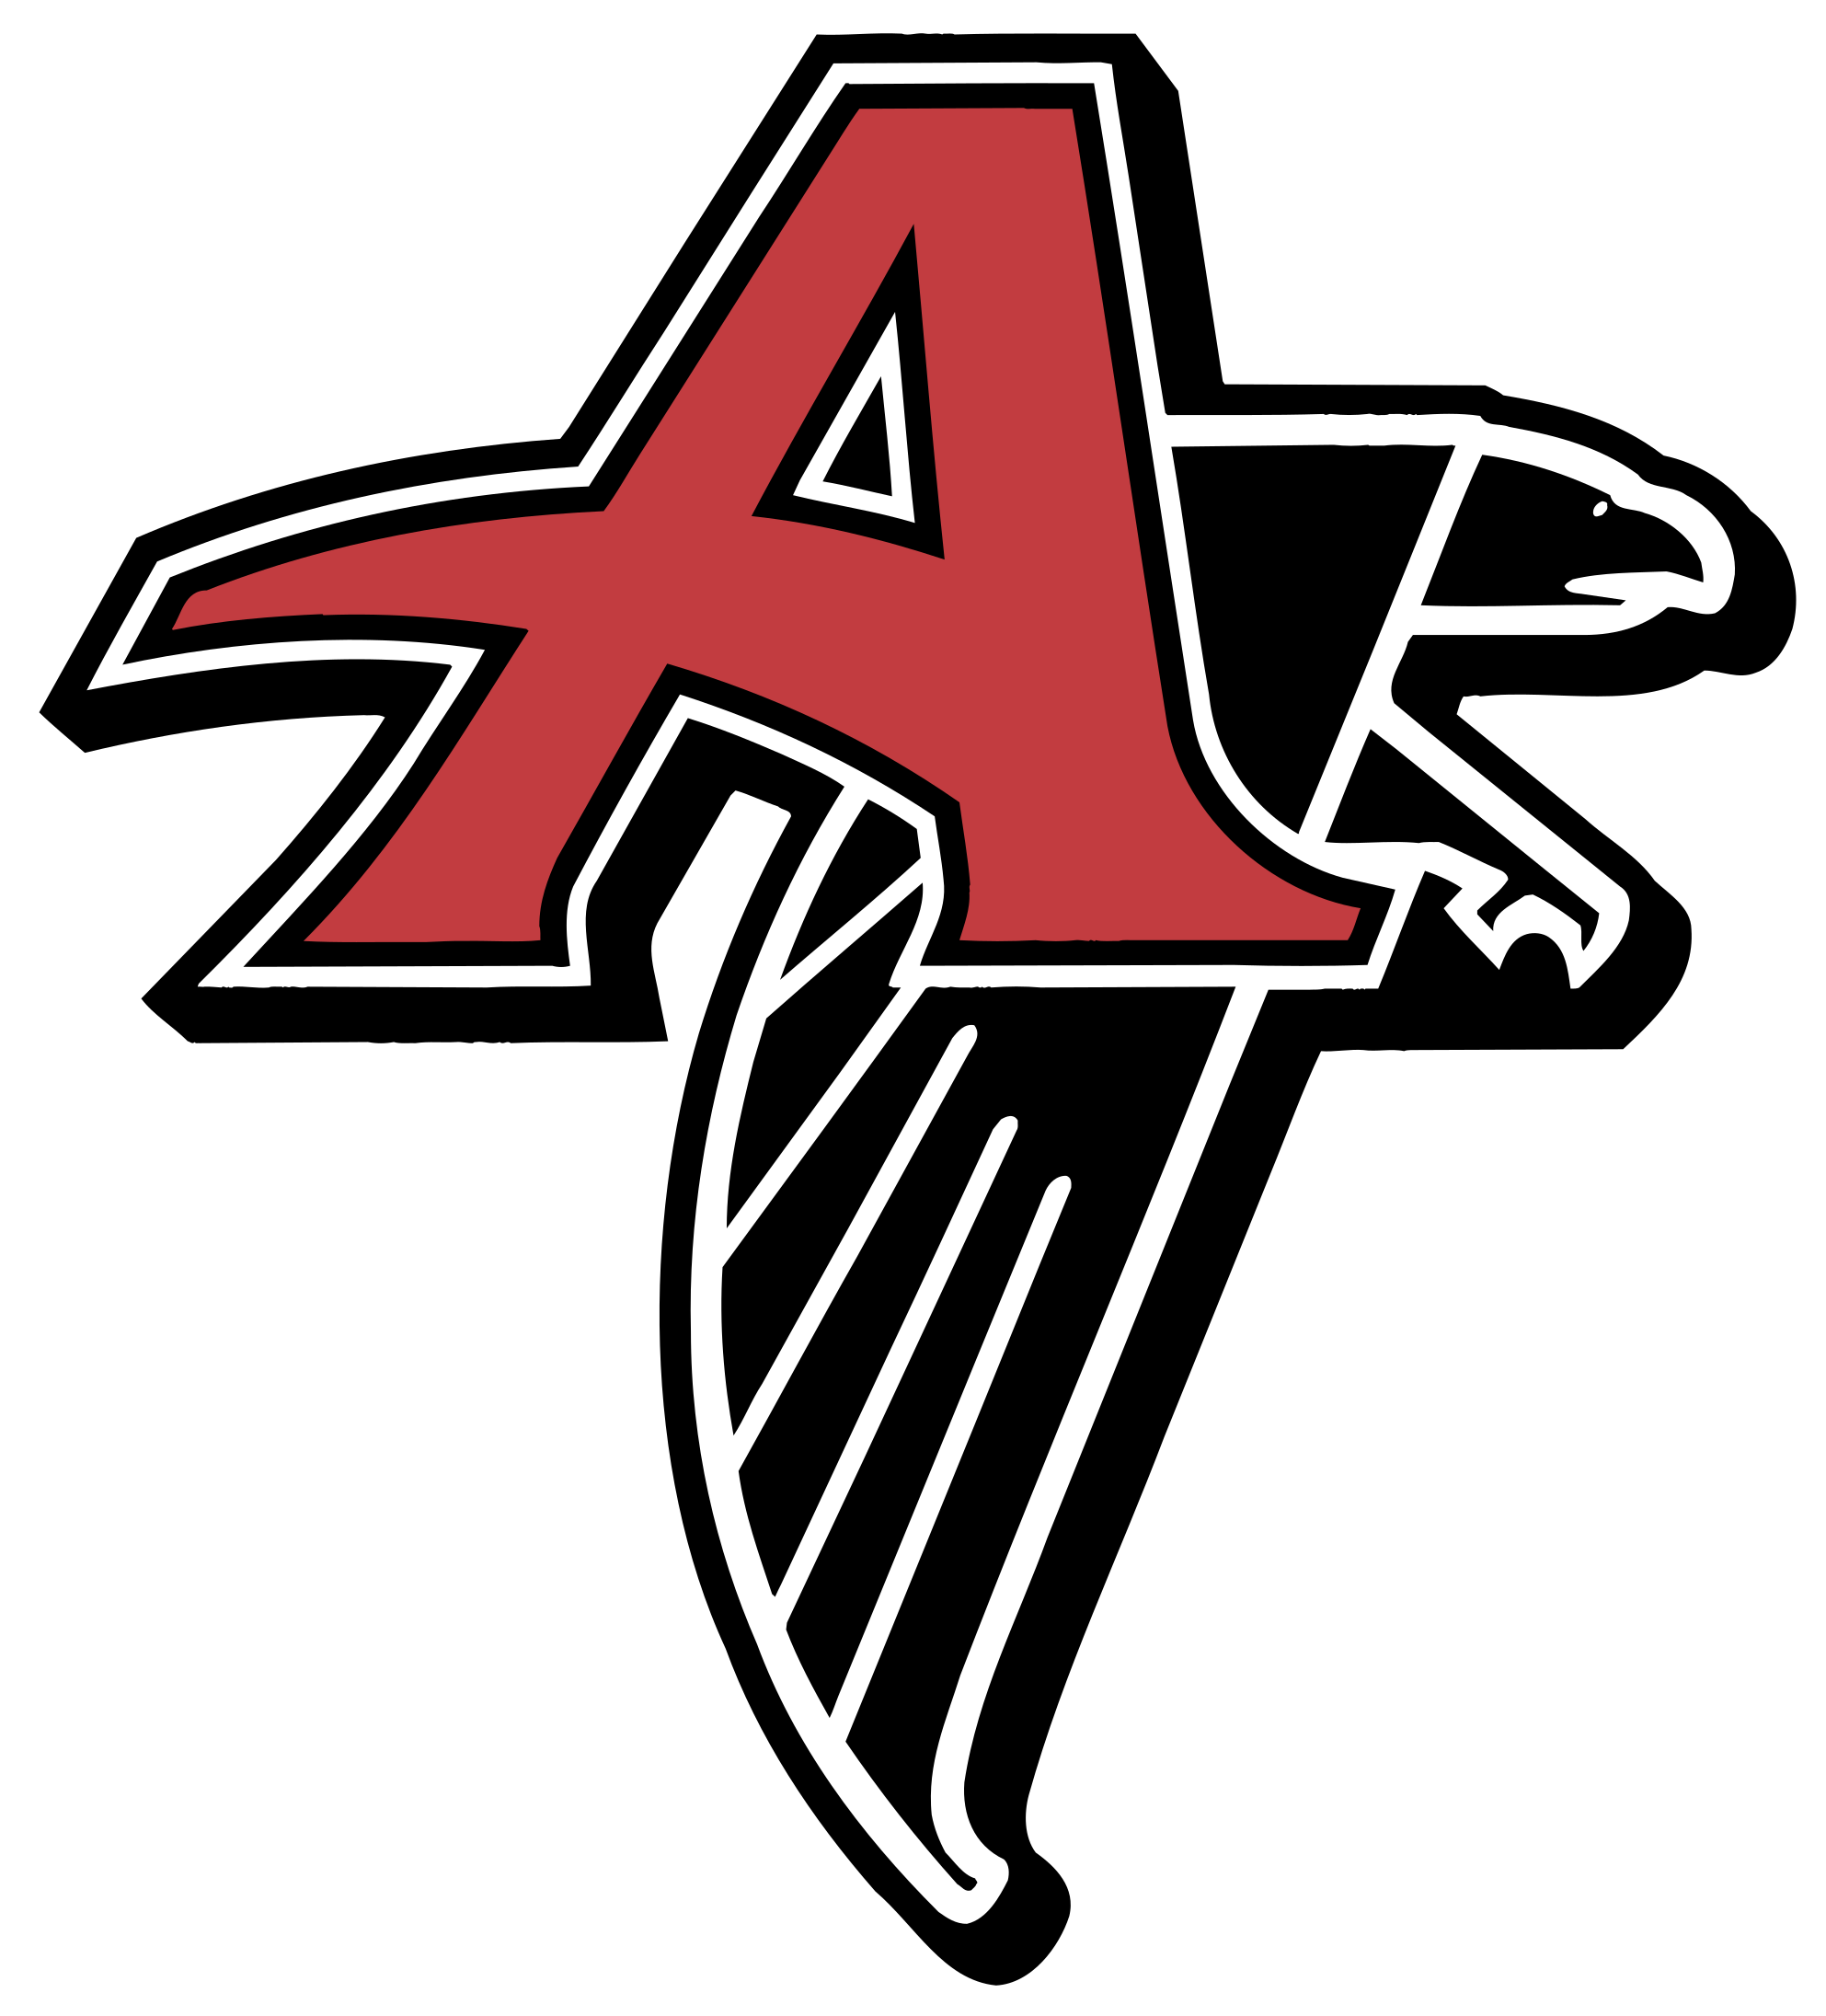 Atlanta Falcons Logo Transparent Image